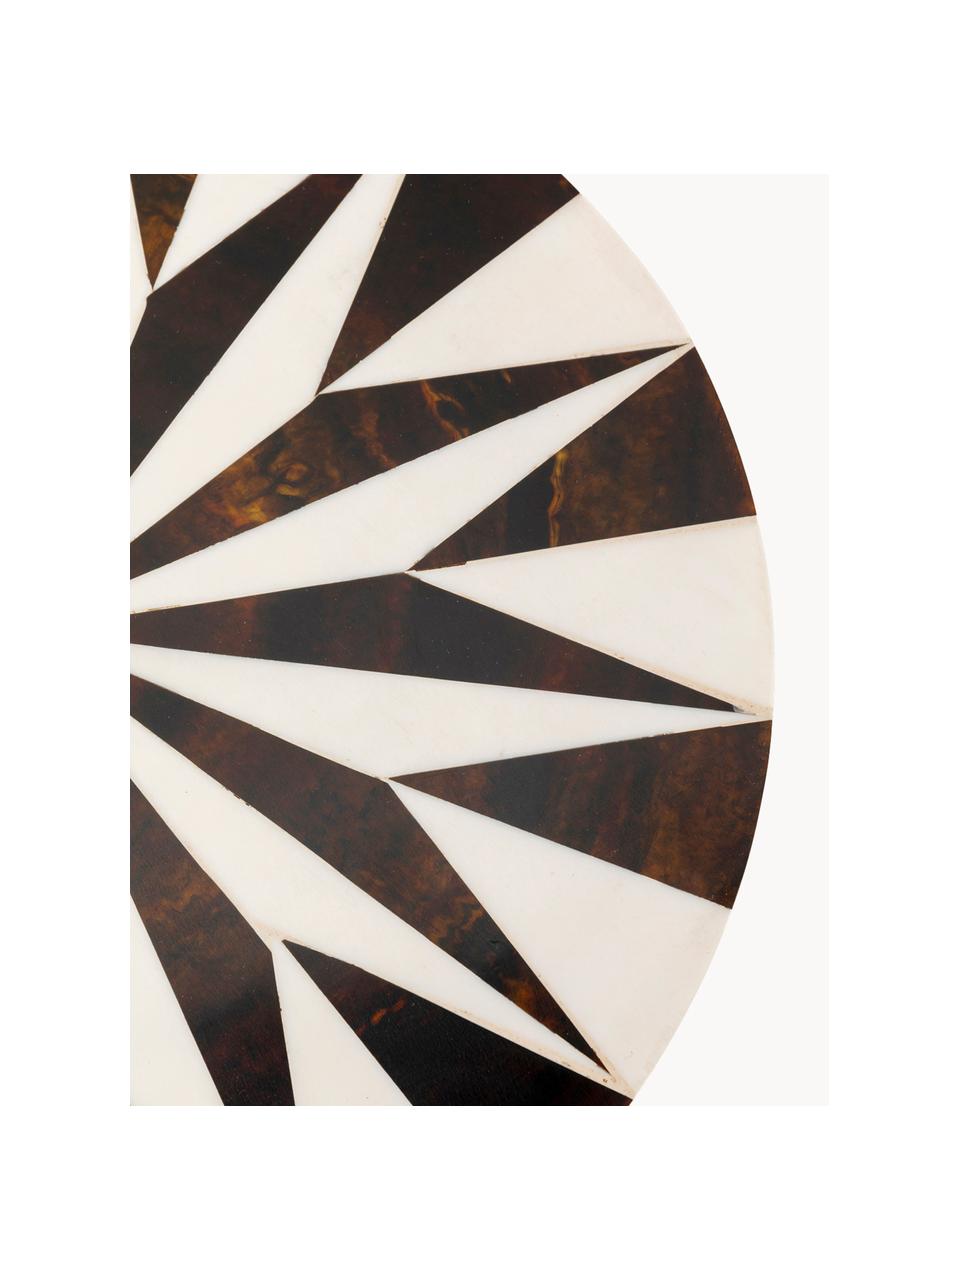 Runder Beistelltisch Domero, handgefertigt, Gestell: Metall, beschichtet, Holz, dunkel lackiert, Ø 25 x H 50 cm